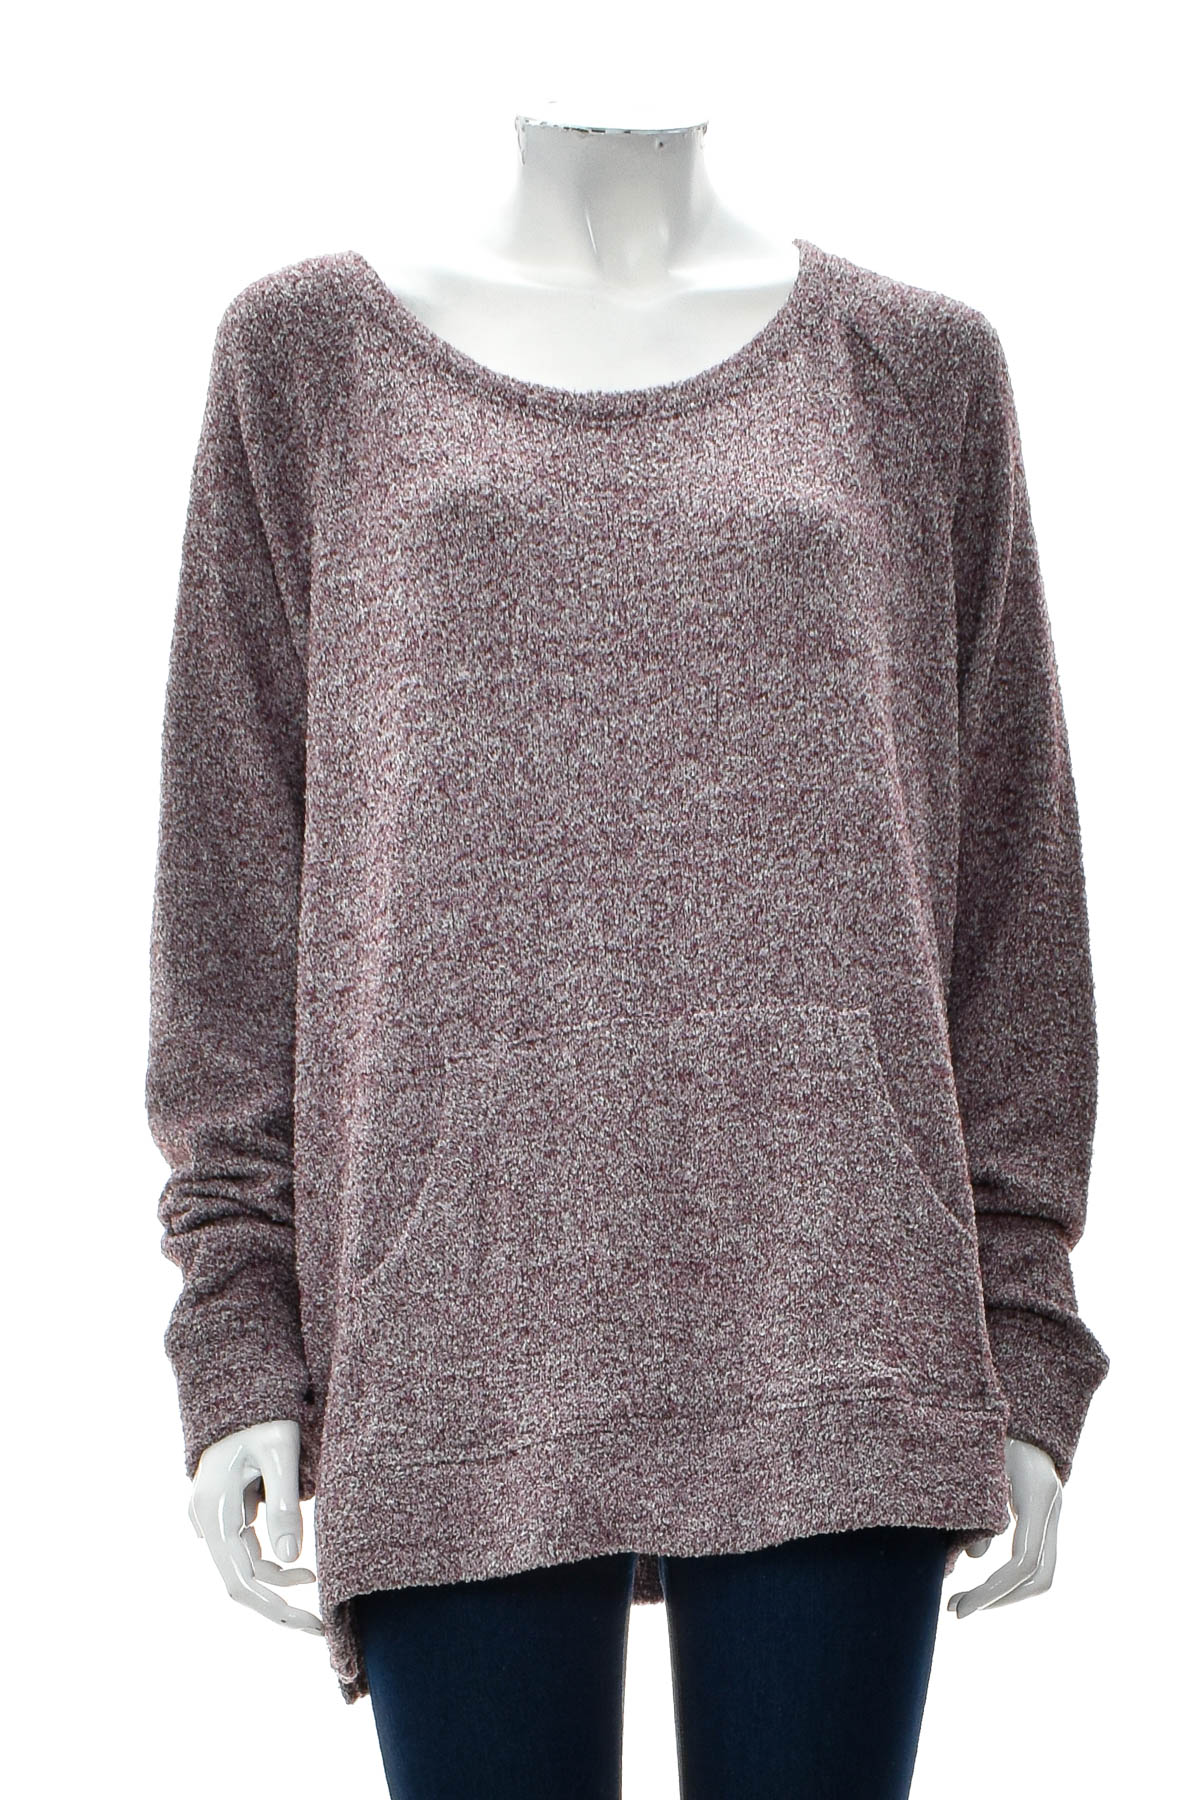 Women's sweater - SECRET TREASURES sleepwear - 0